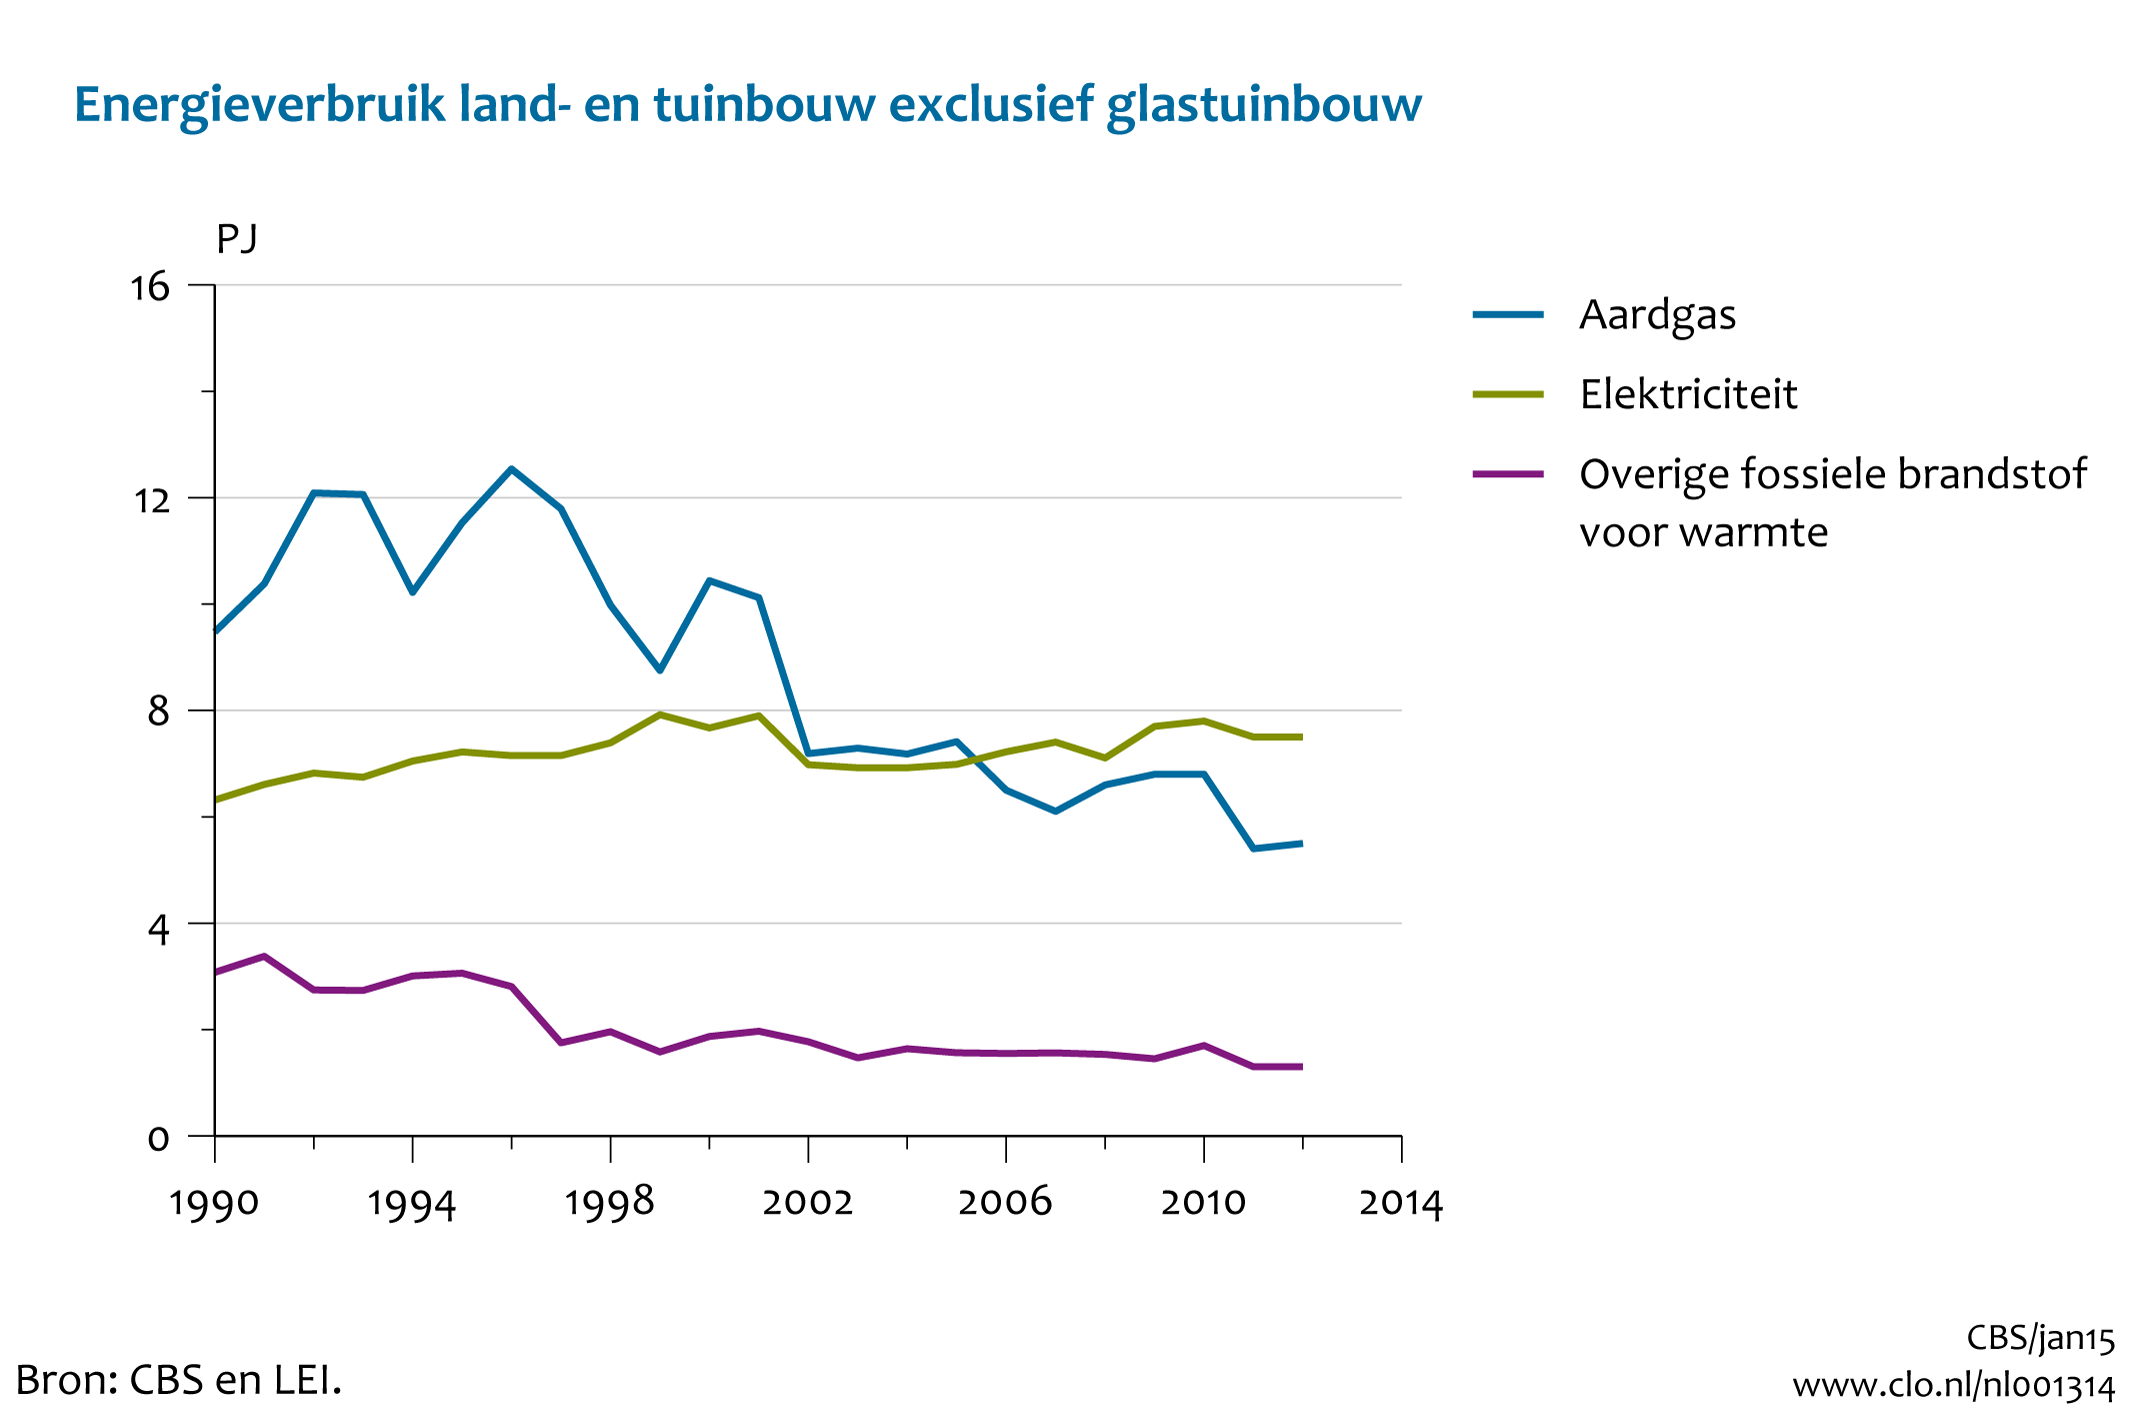 Figuur energieverbruik overige land- en tuinbouw 1990-2013*. In de rest van de tekst wordt deze figuur uitgebreider uitgelegd.